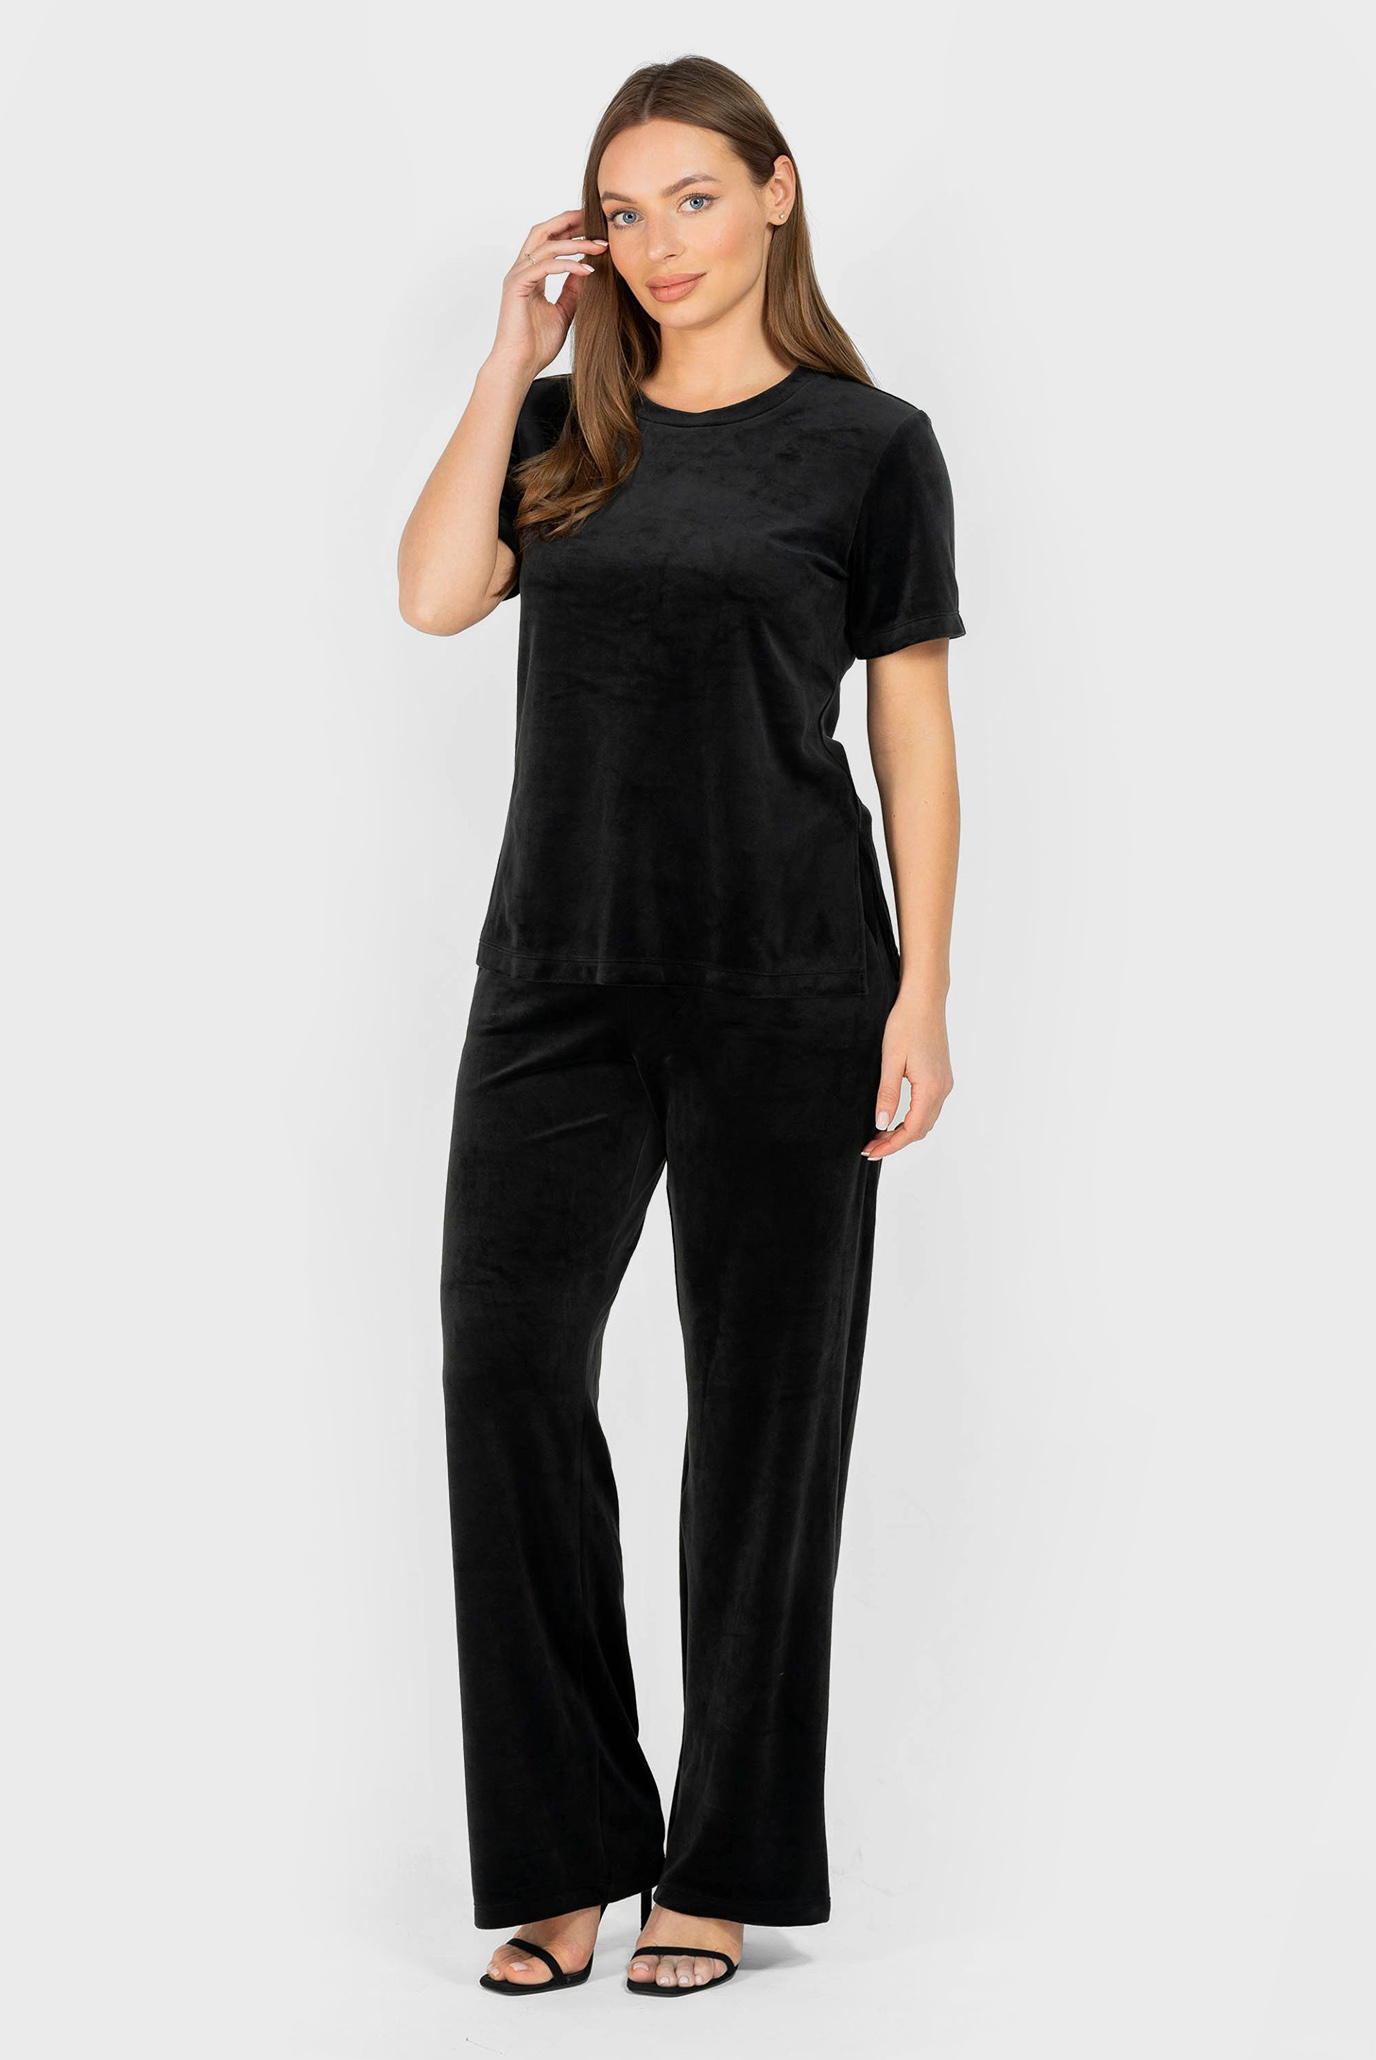 Женский черный велюровый комплект одежды (топ, брюки) 1